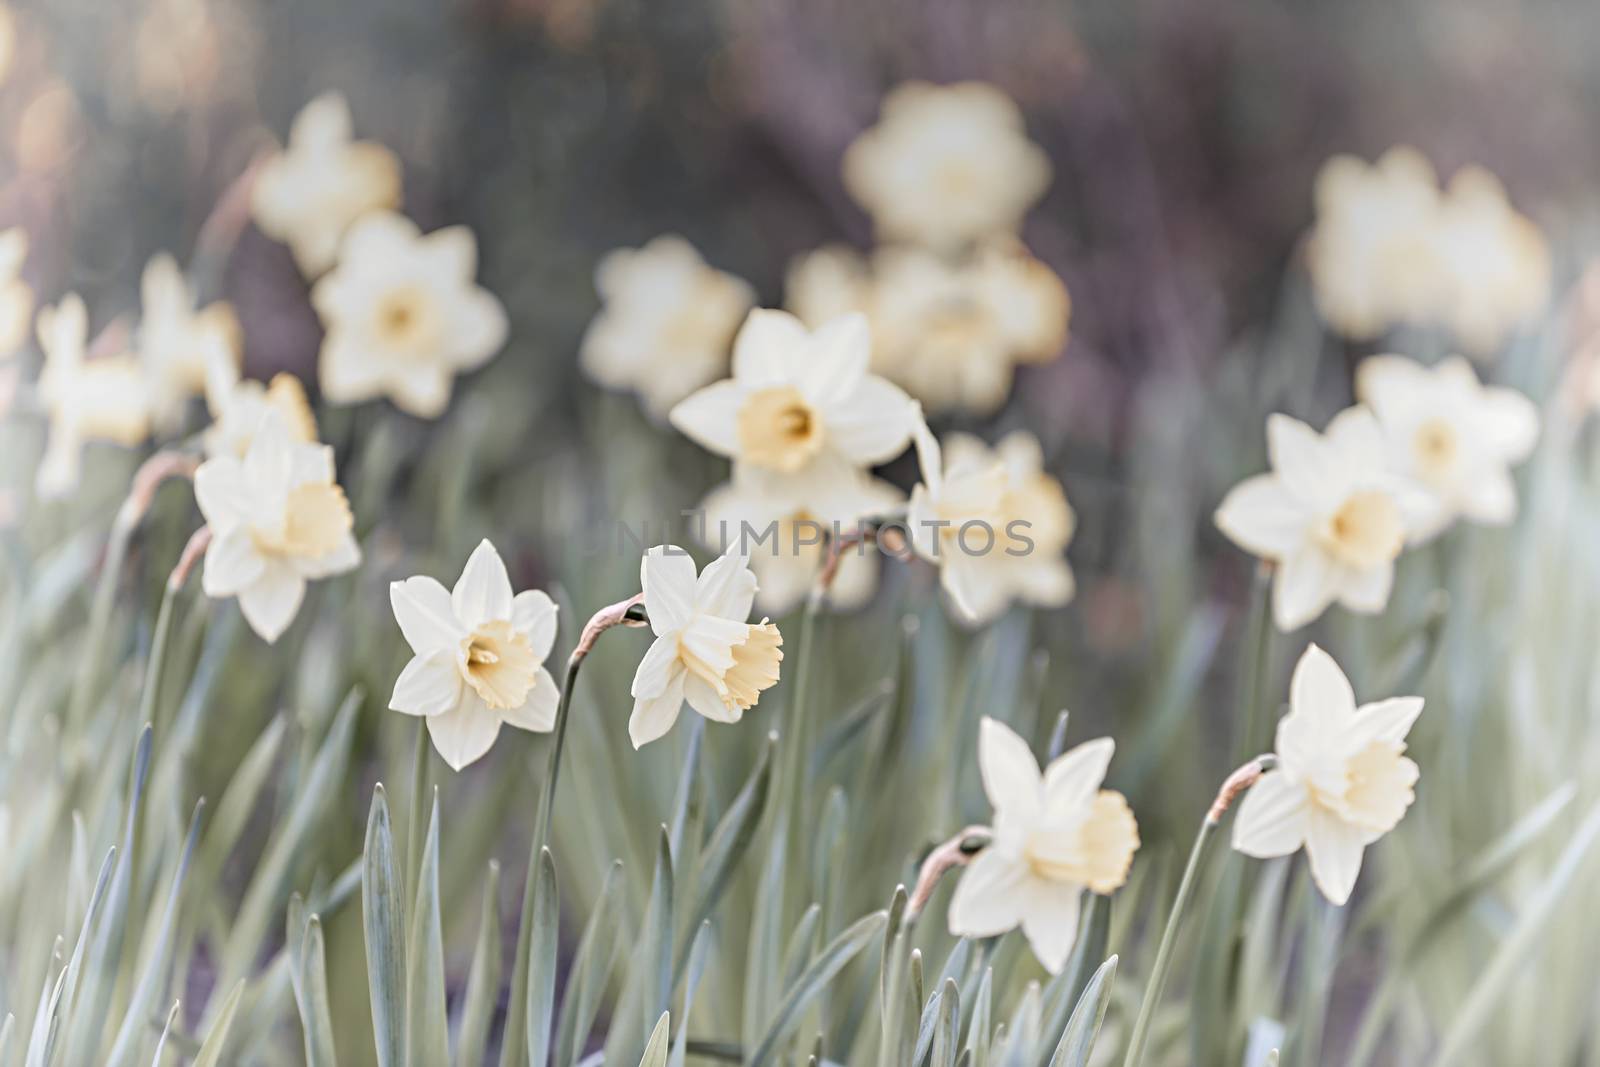 Daffodils by elenathewise